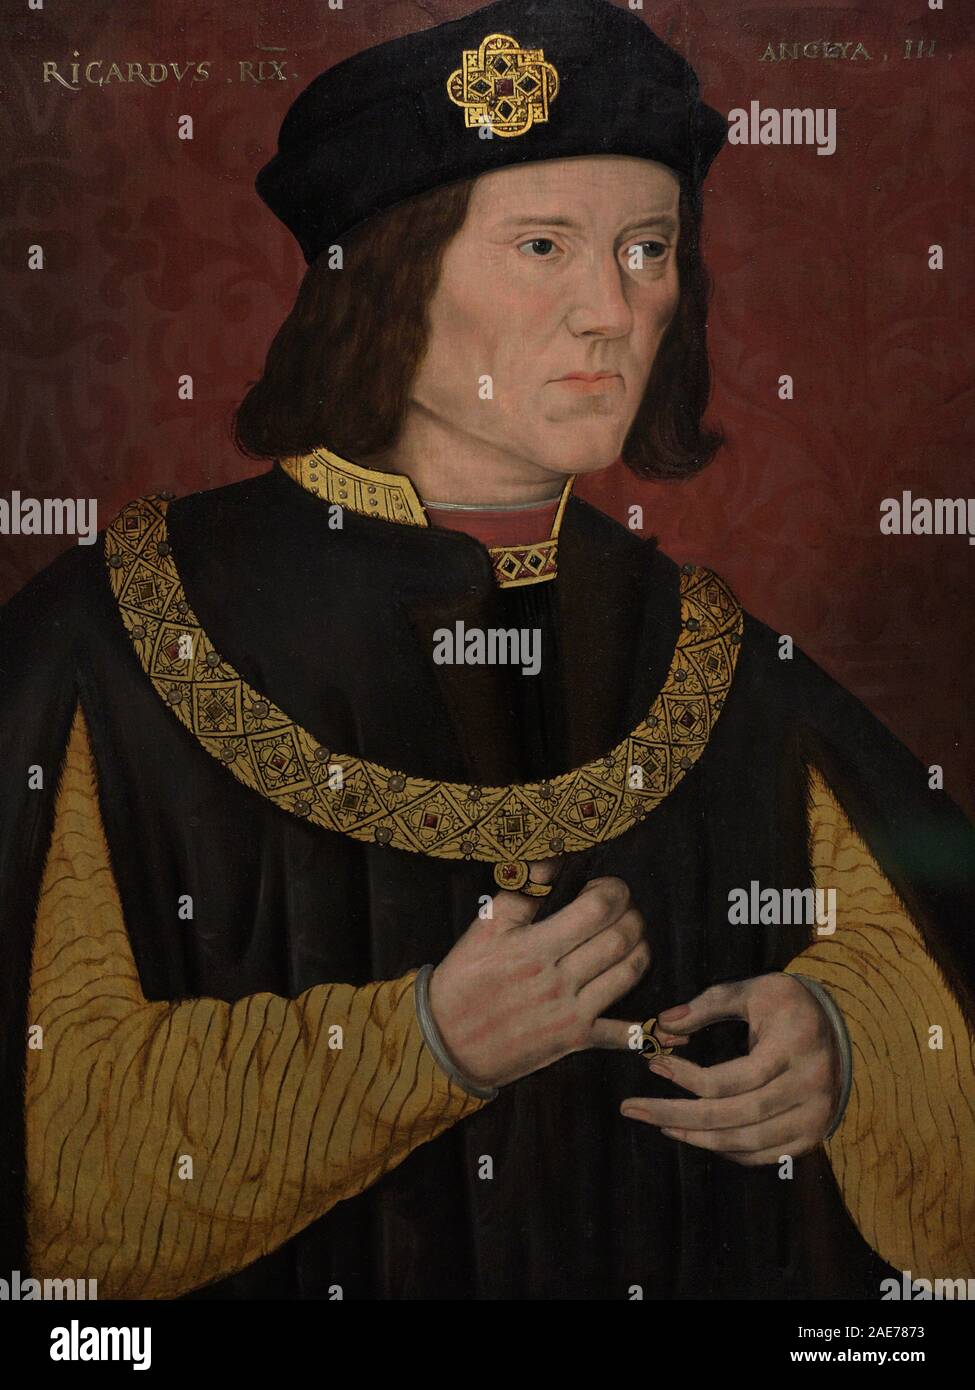 Ricardo III de Inglaterra (1452-1485). Rey de Inglaterra y Señor de Irlanda. Retrato. Autor desconocido. Oleo sobre lienzo, 1597-1618. National Portrait Gallery. Londres. Inglaterra. Stock Photo